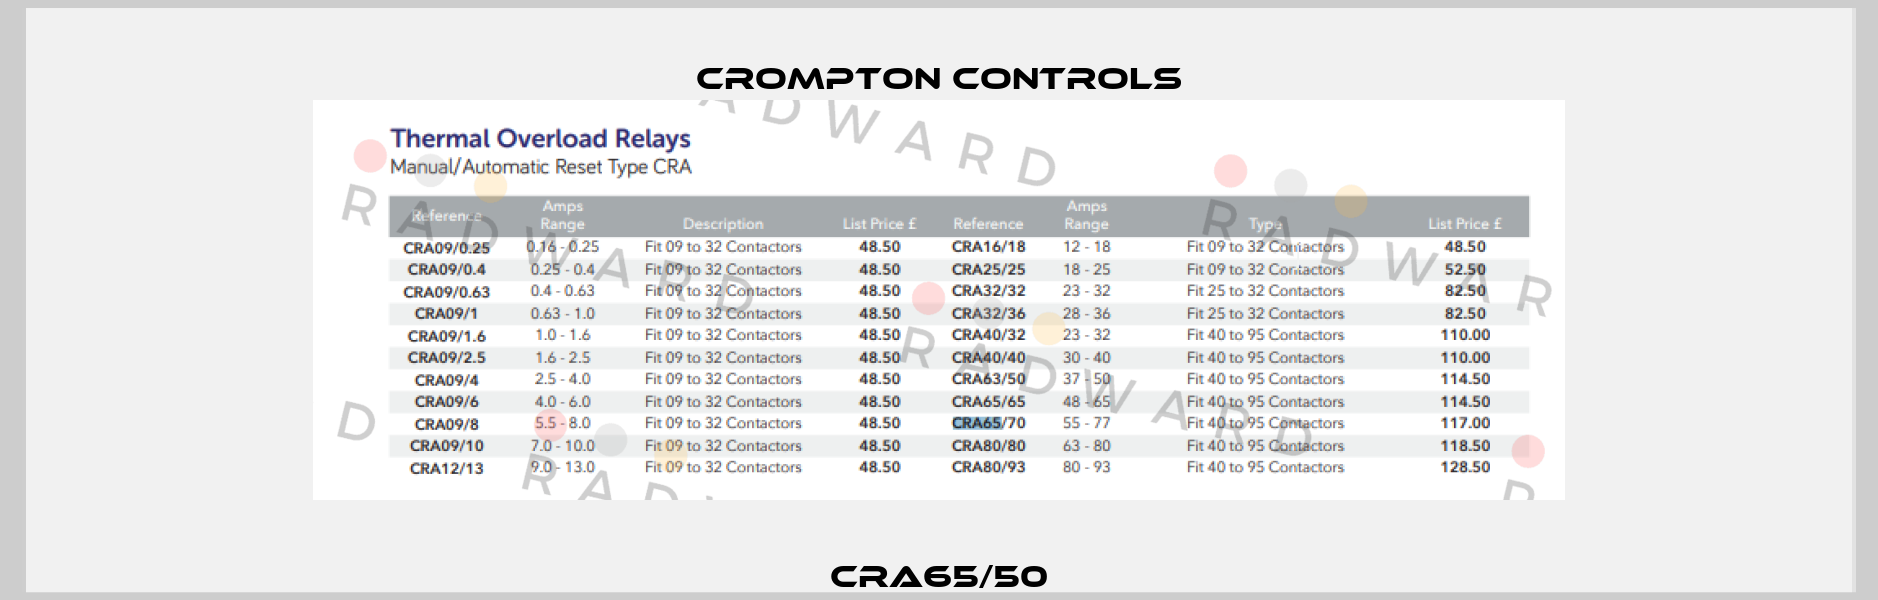 CRA65/50 Crompton Controls